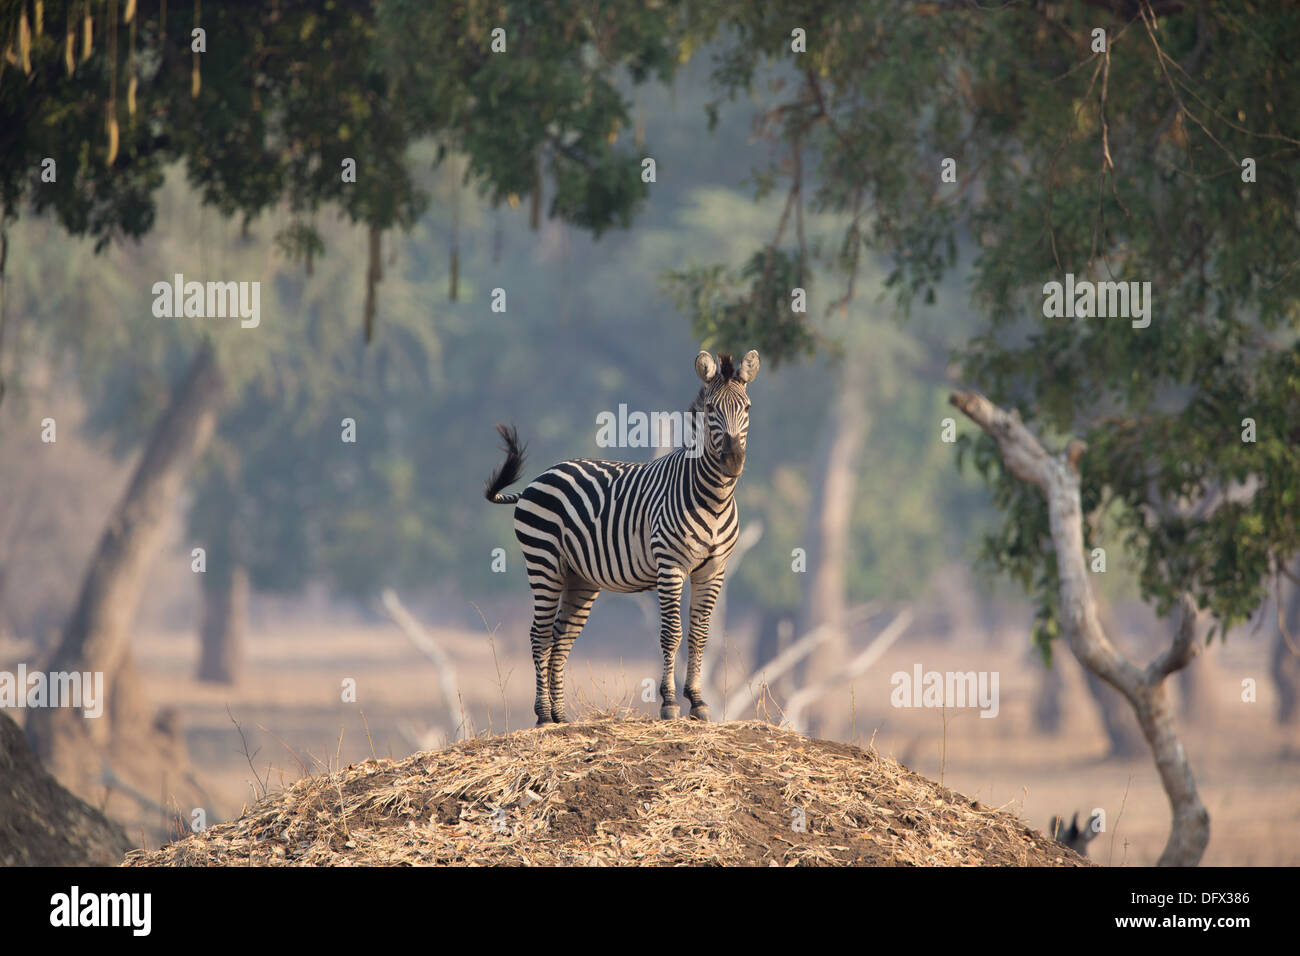 Llanuras cebra (Equus quagga) en la mirada hacia fuera en la parte superior de un termitero Foto de stock